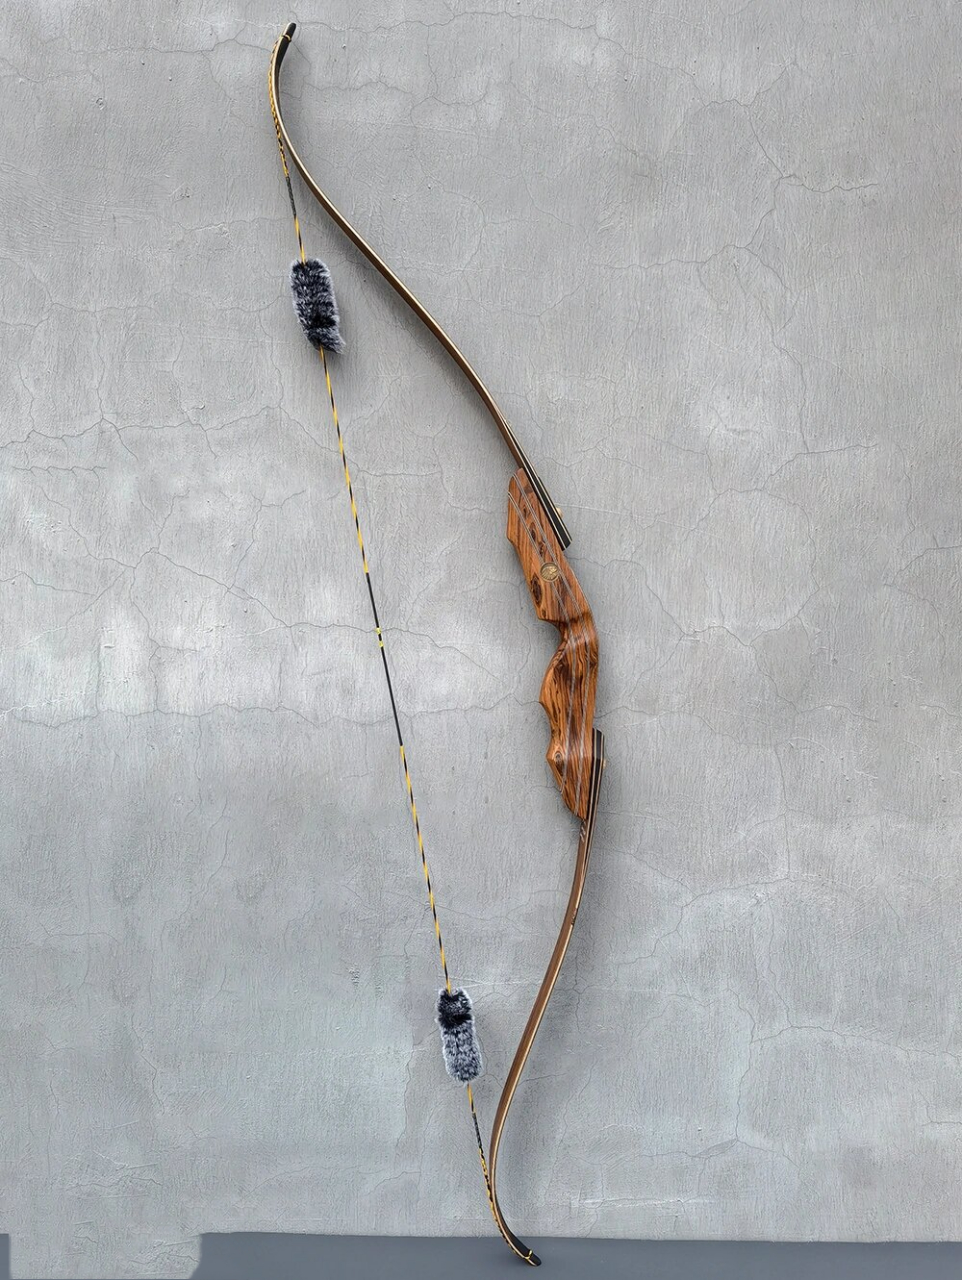 黄金檀木料制作的美猎弓 巴尔弓坊美猎弓:印第安人,黄金檀木料层压